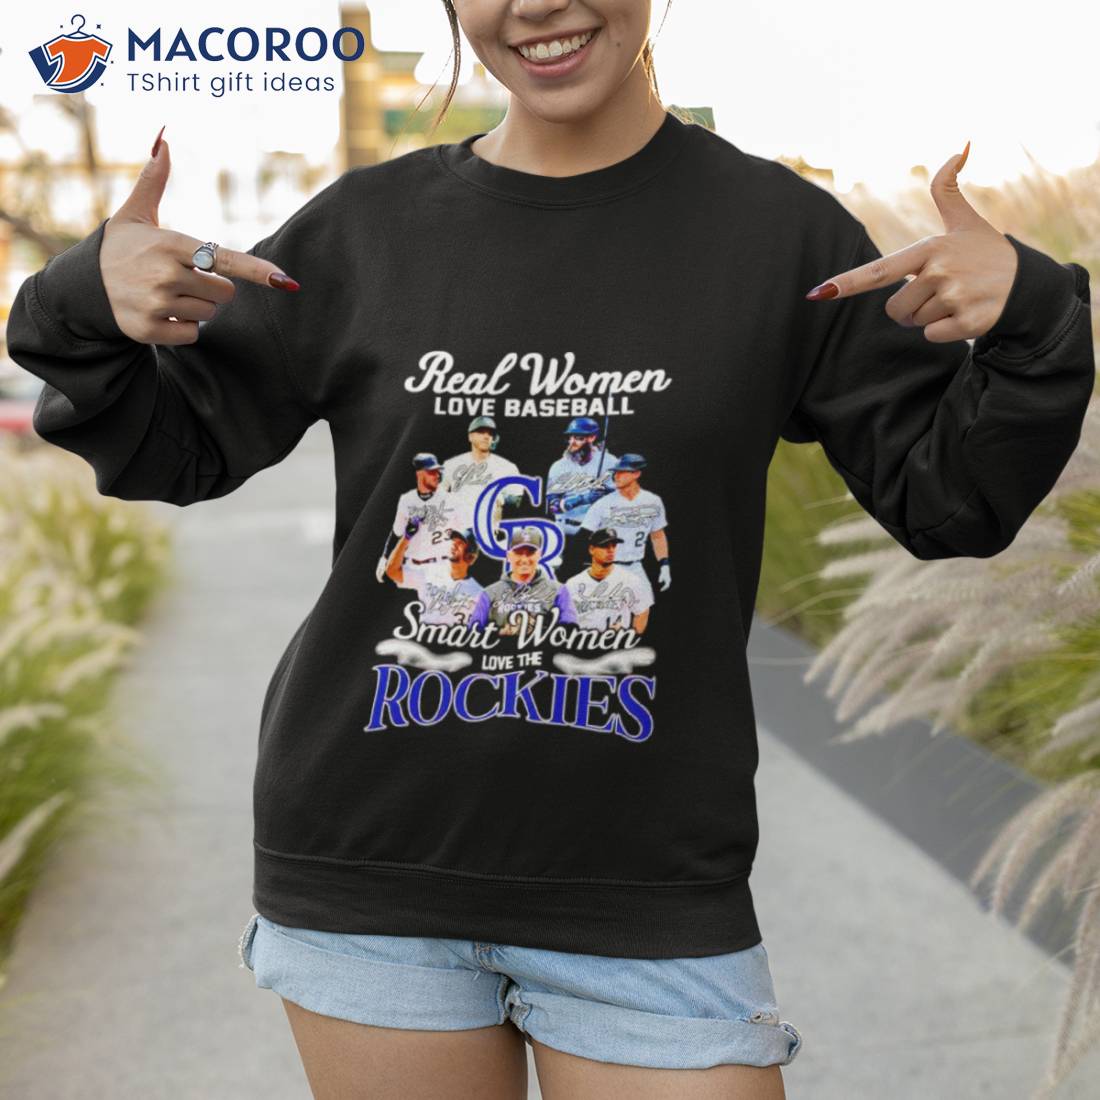 women rockies shirt